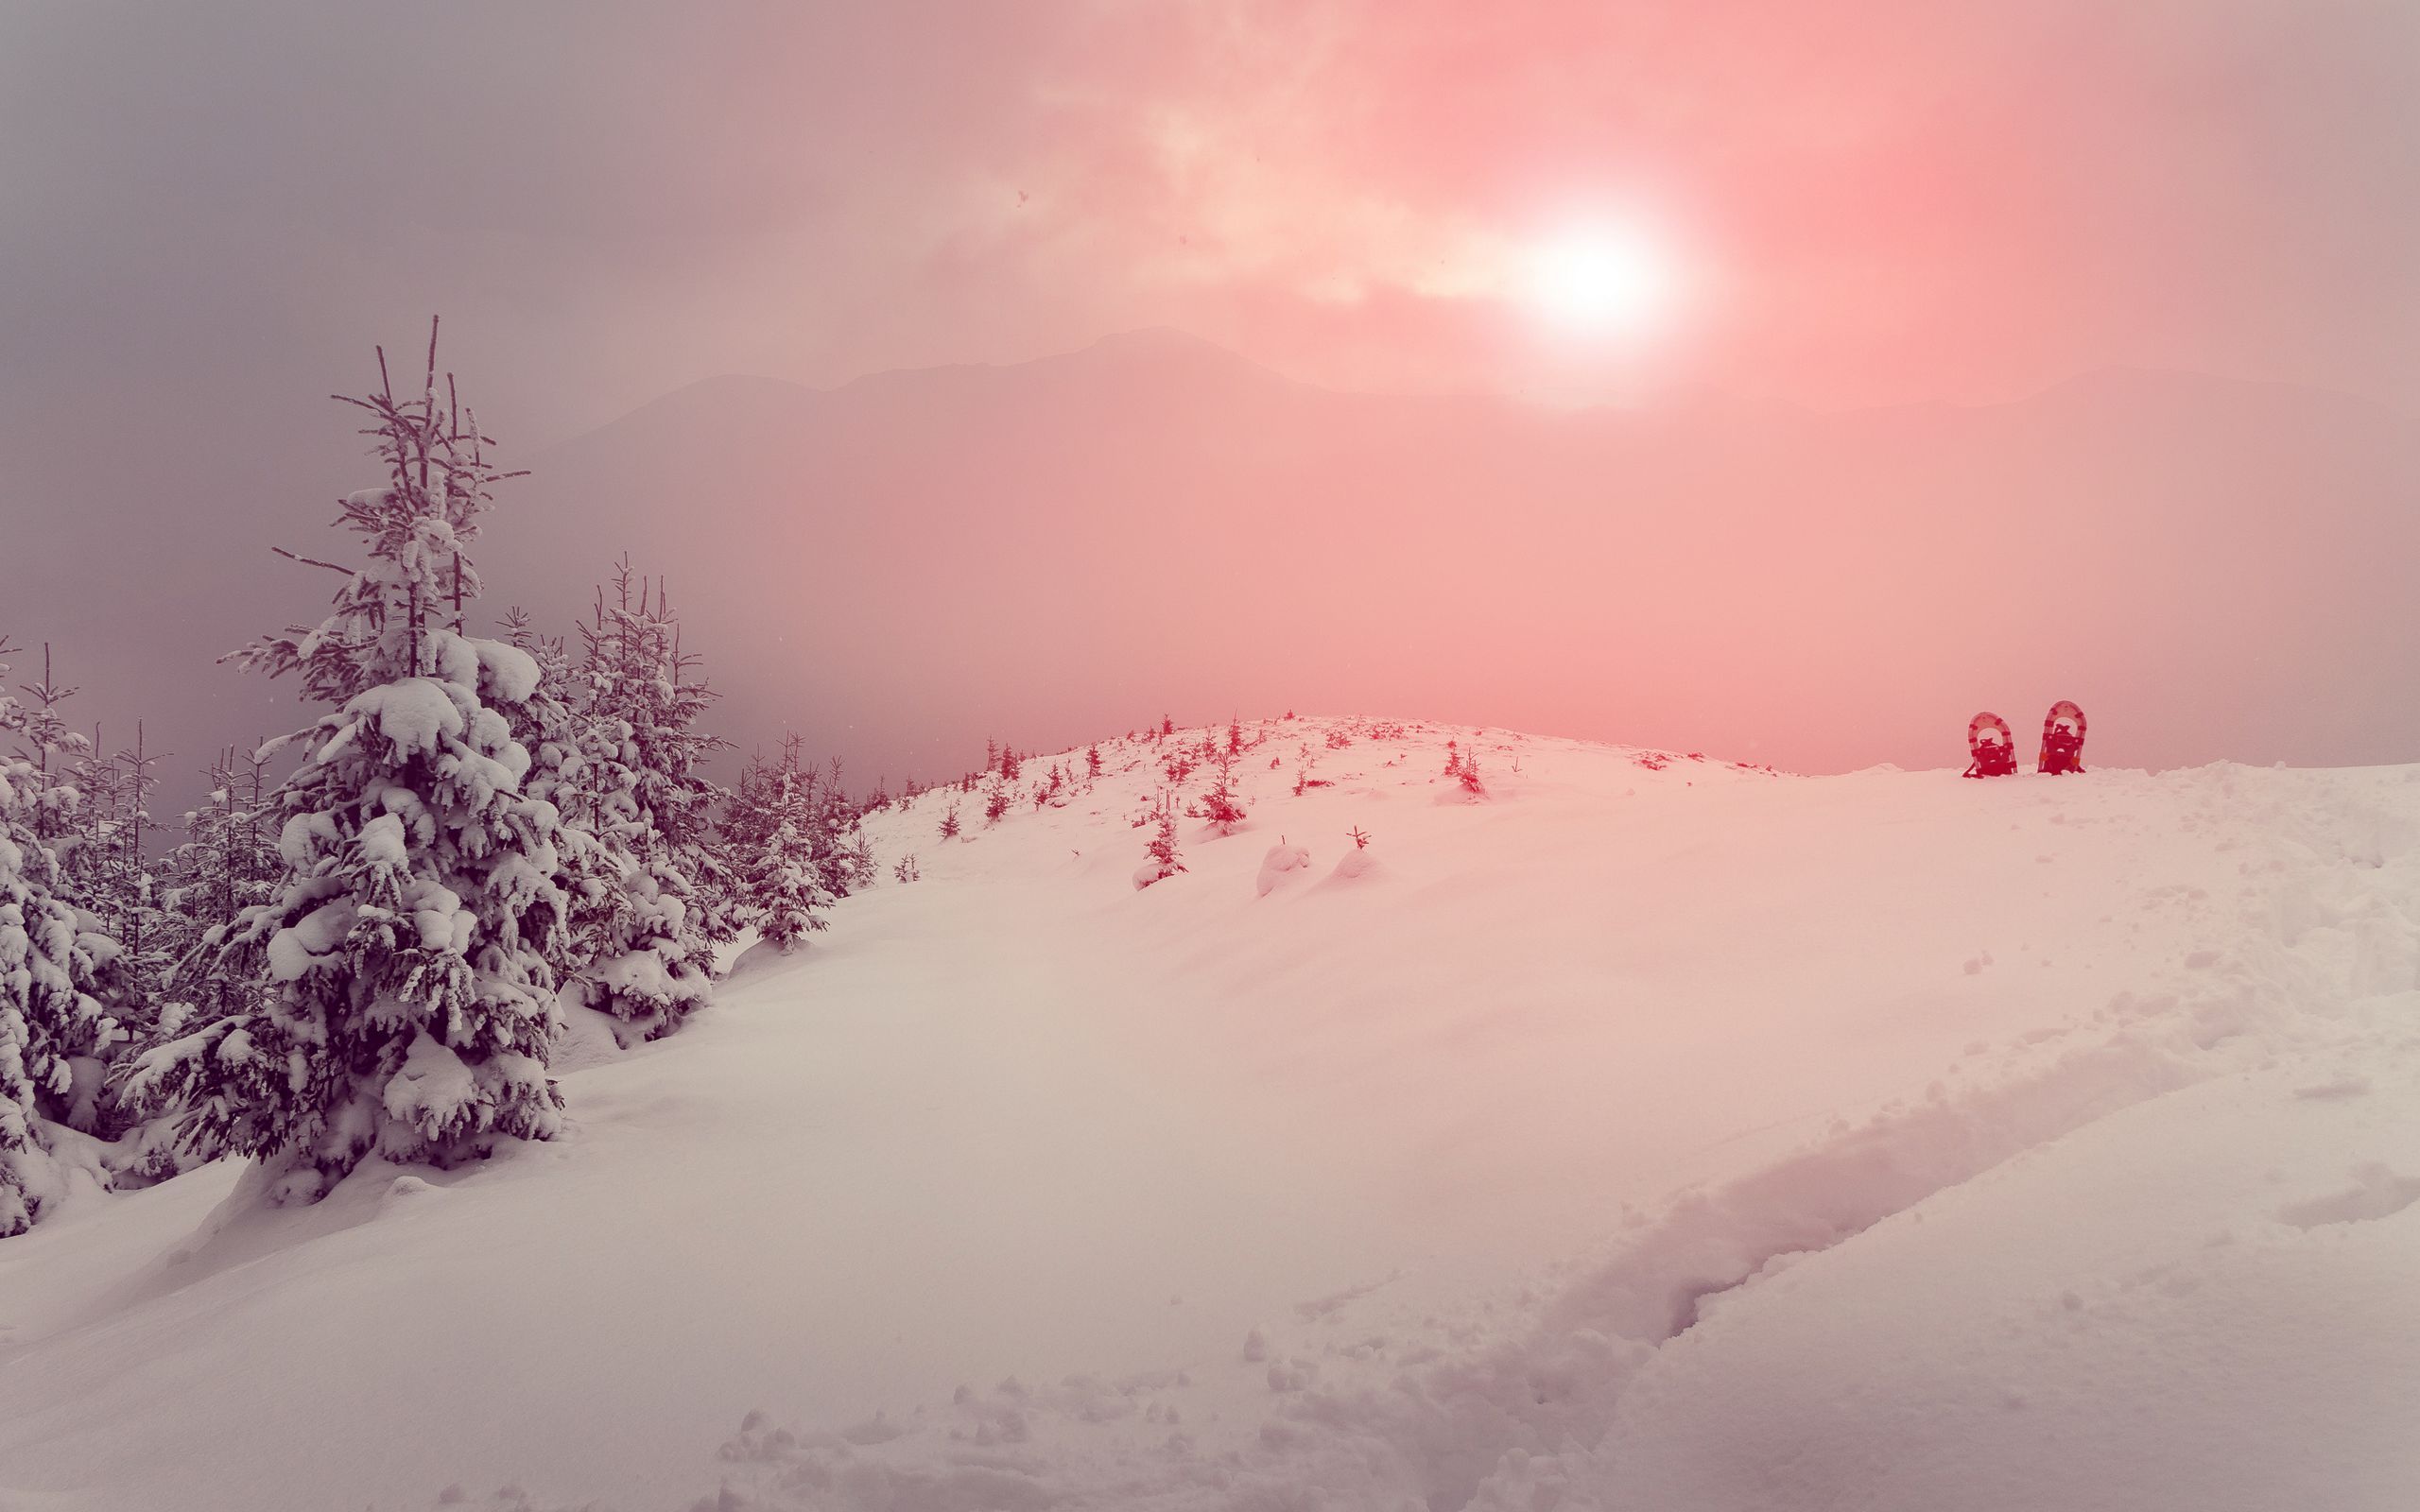 雪山夕阳风景图片5K壁纸,超级高清很适合设置